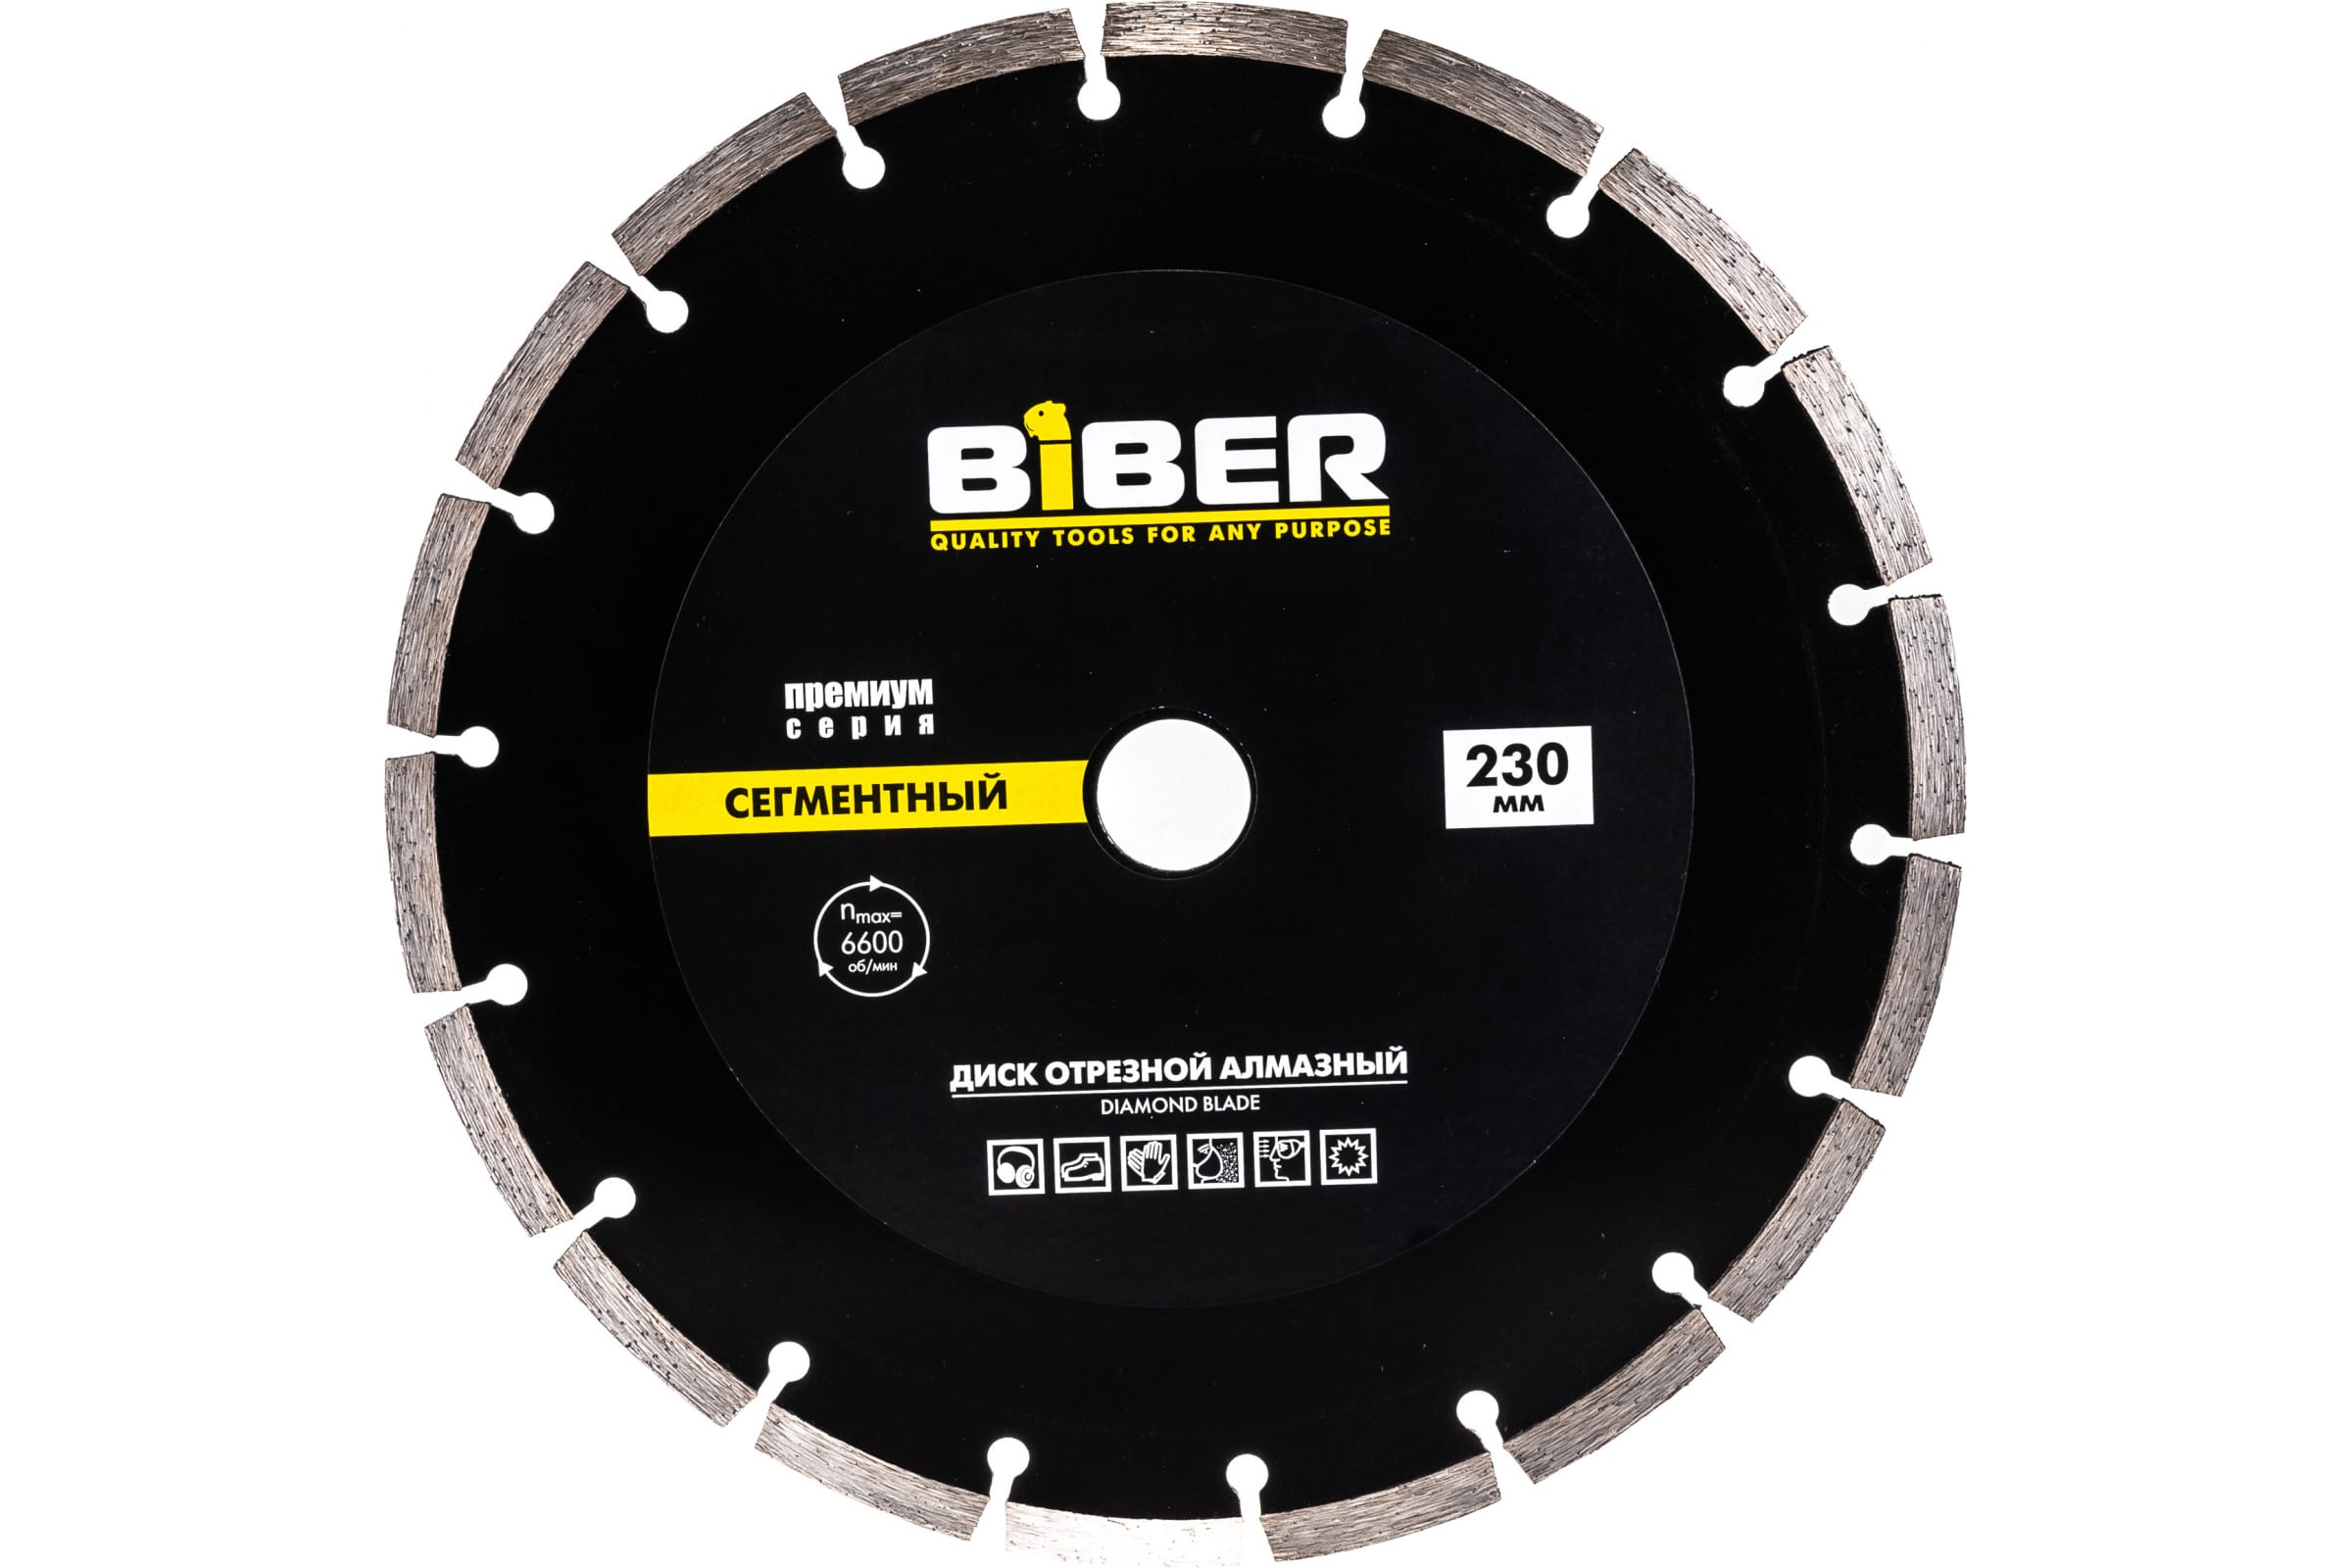 Biber Диск алмазный сегментный Премиум 230мм 70266 тов-039554 biber диск алмазный сегментный премиум 230мм 70266 тов 039554